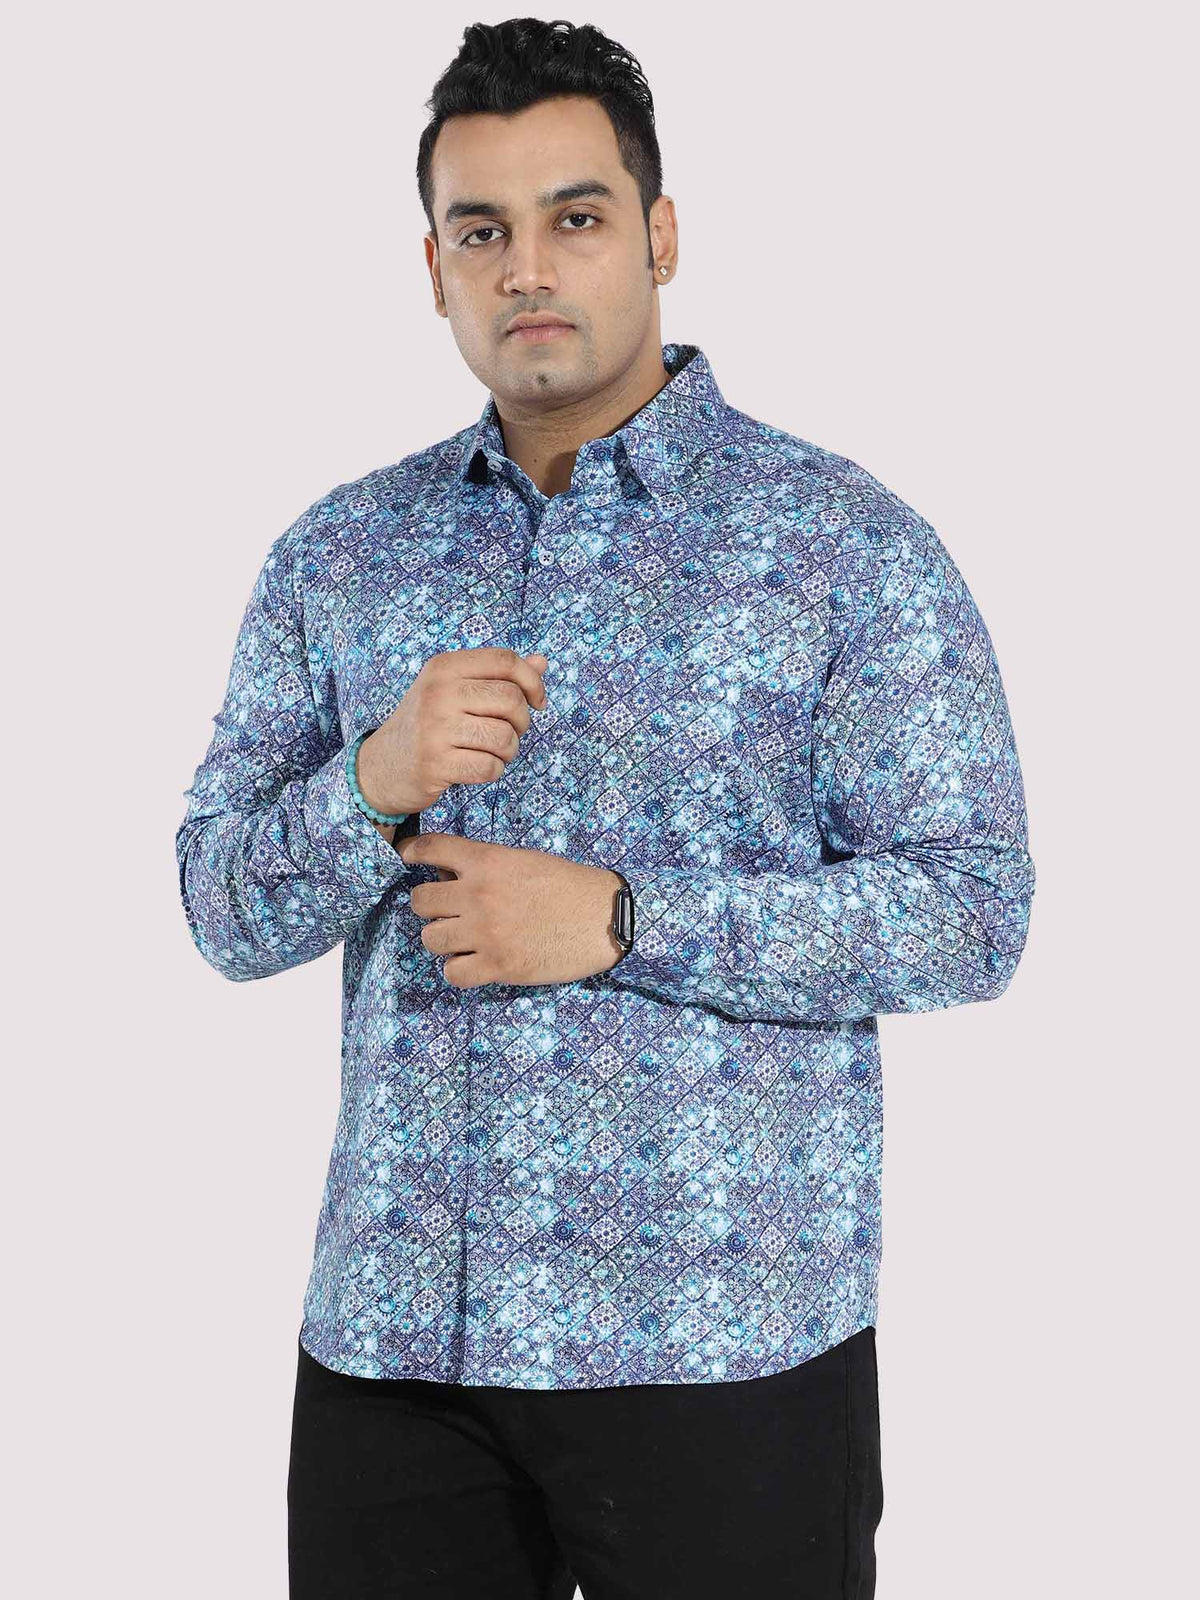 Propel Blue Cotton Satin Designer Shirt Men's Plus Size